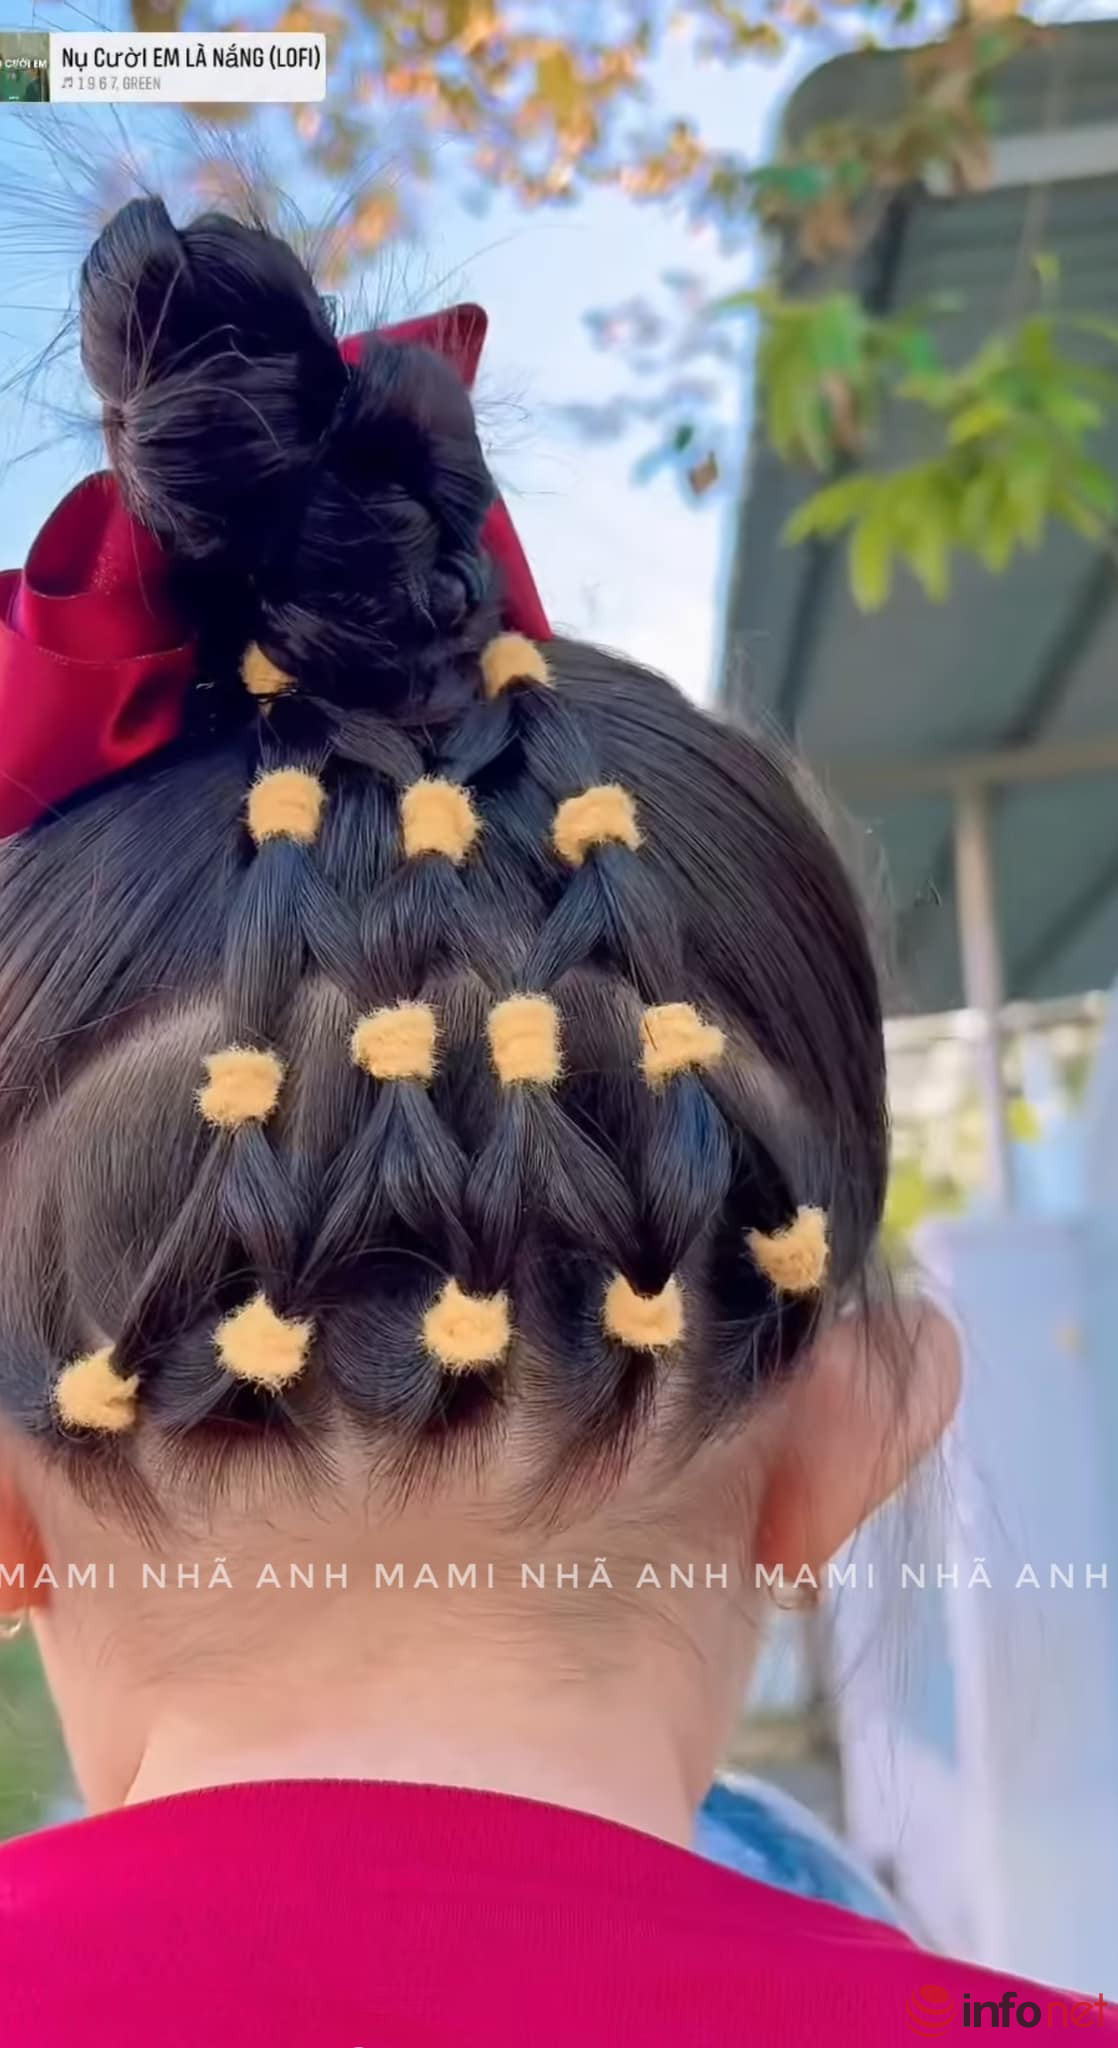  Những Kiểu Tóc Đẹp Cho Bé Gái Đi Học Đi Chơi  Hairstyles For Little  Girls  YouTube